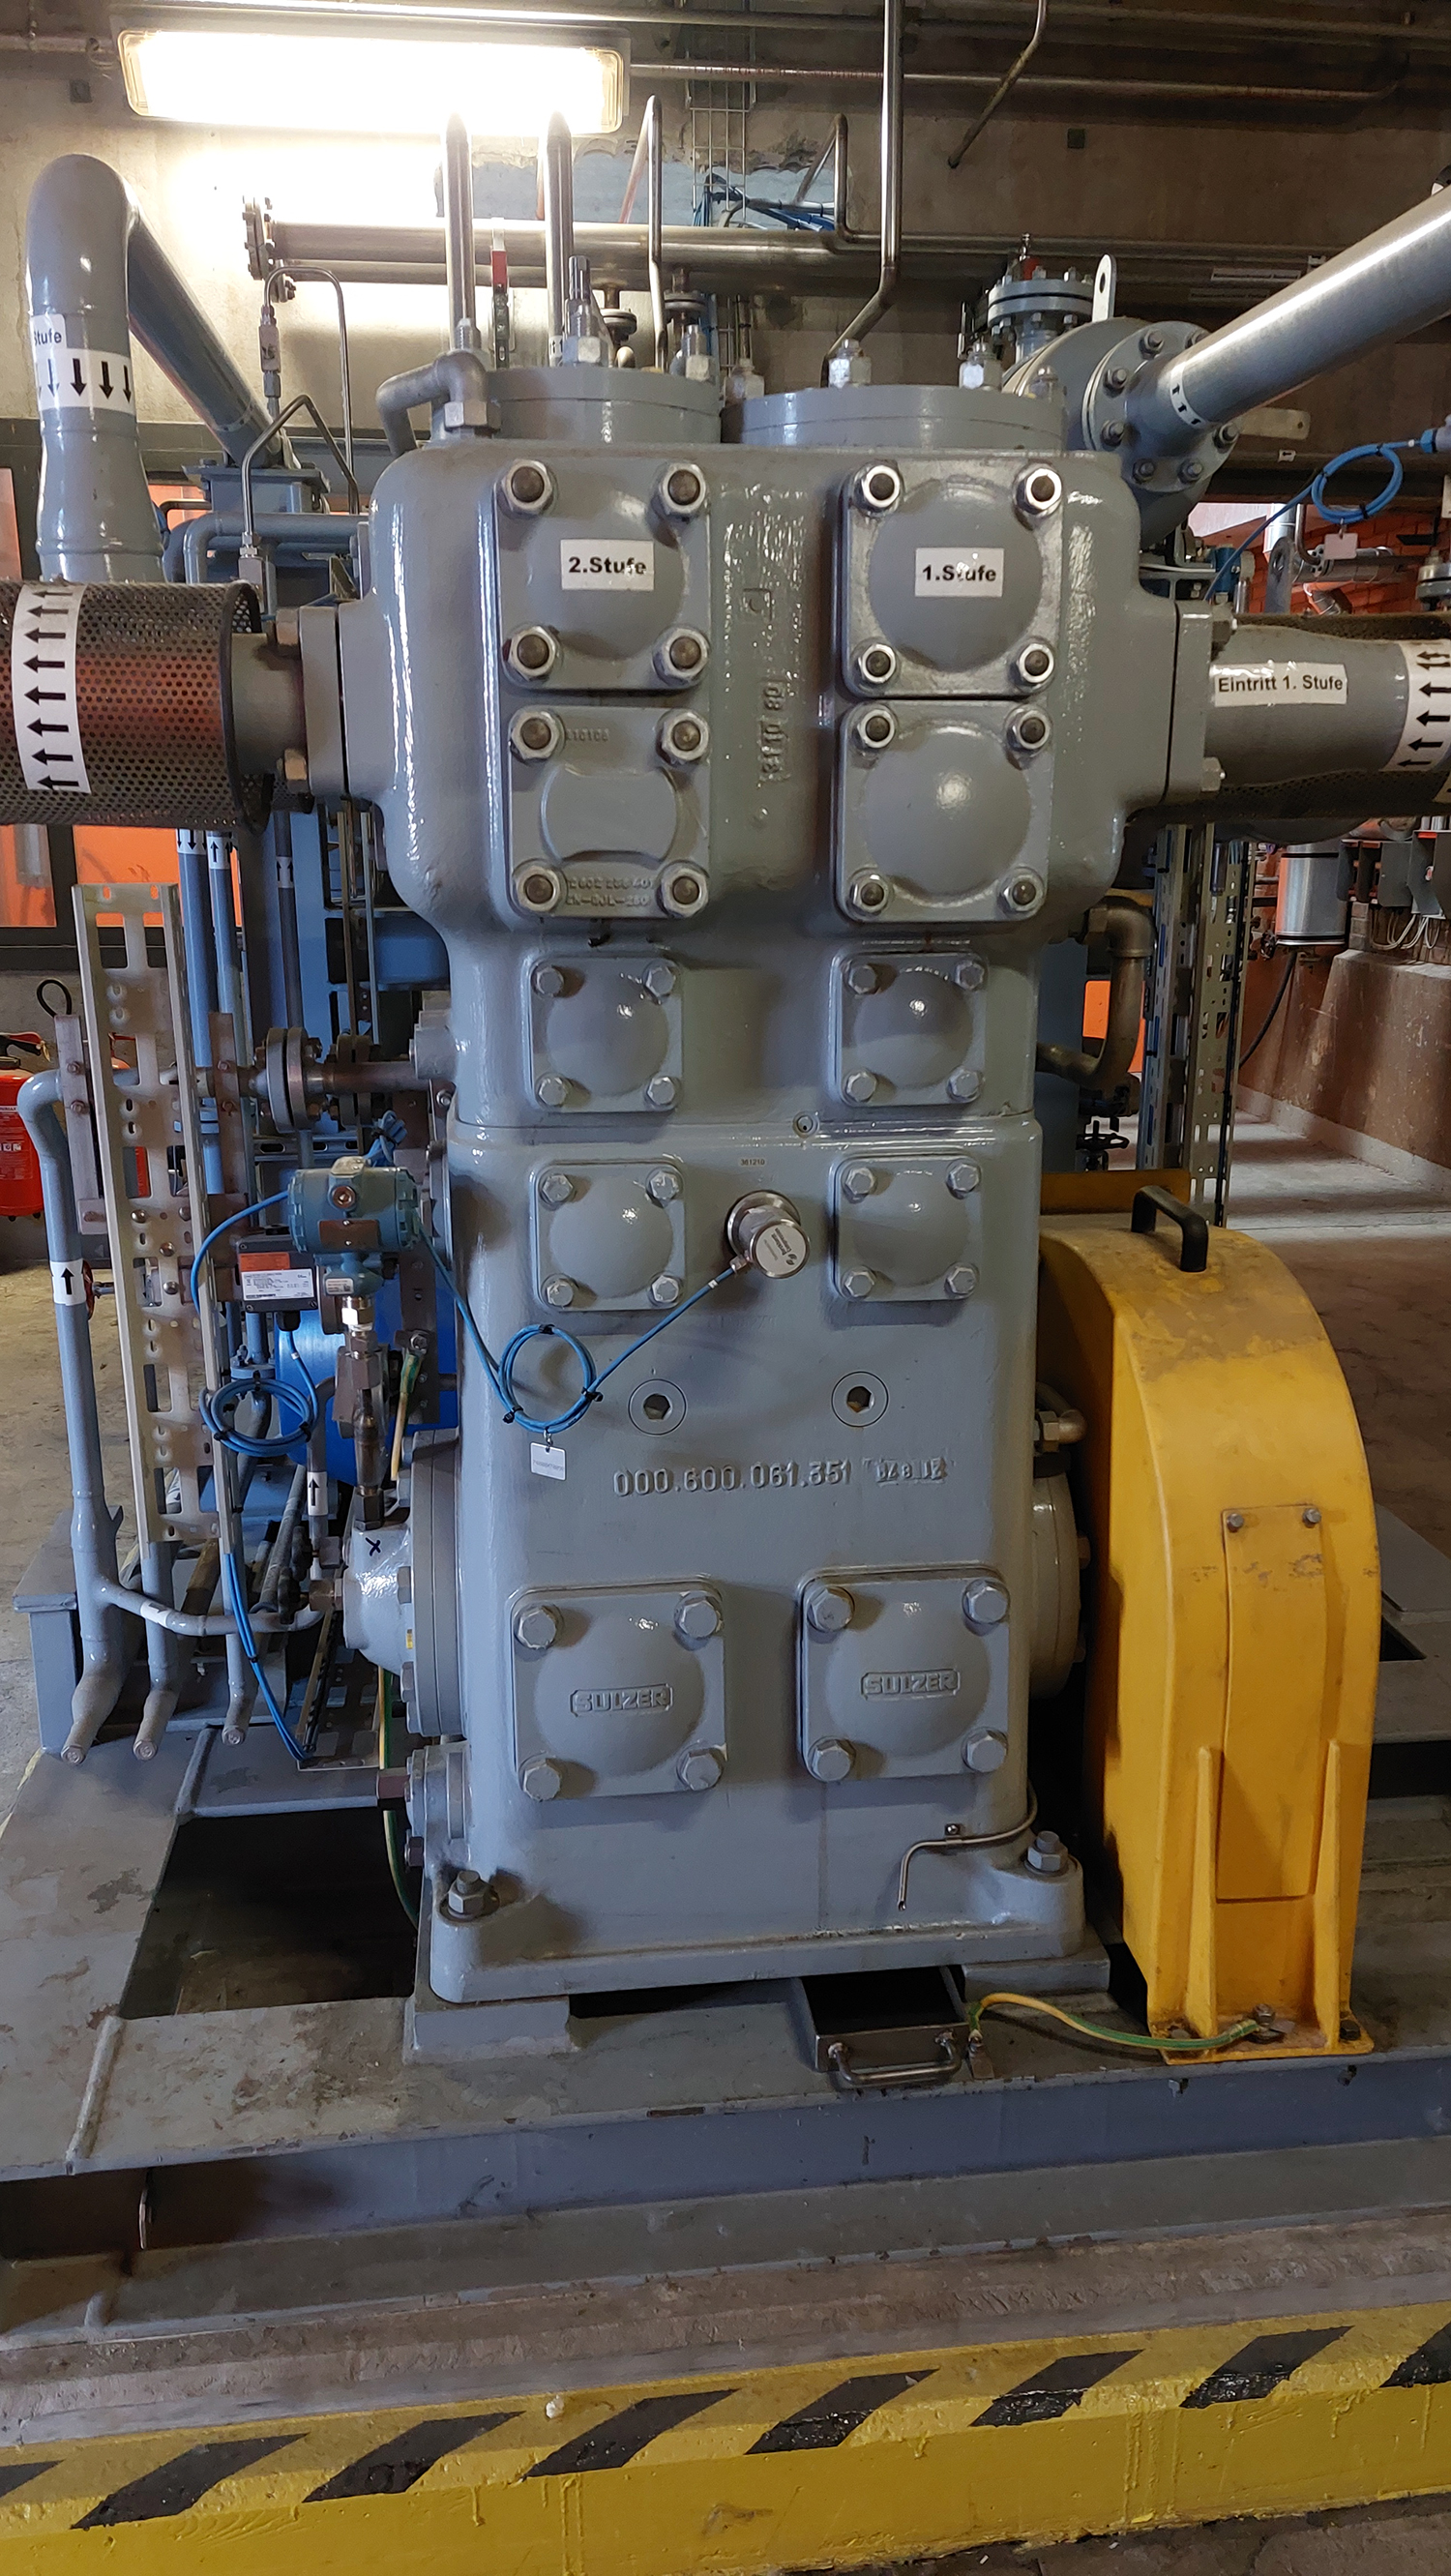 Refurbished compressor skid installed at customer's plant.